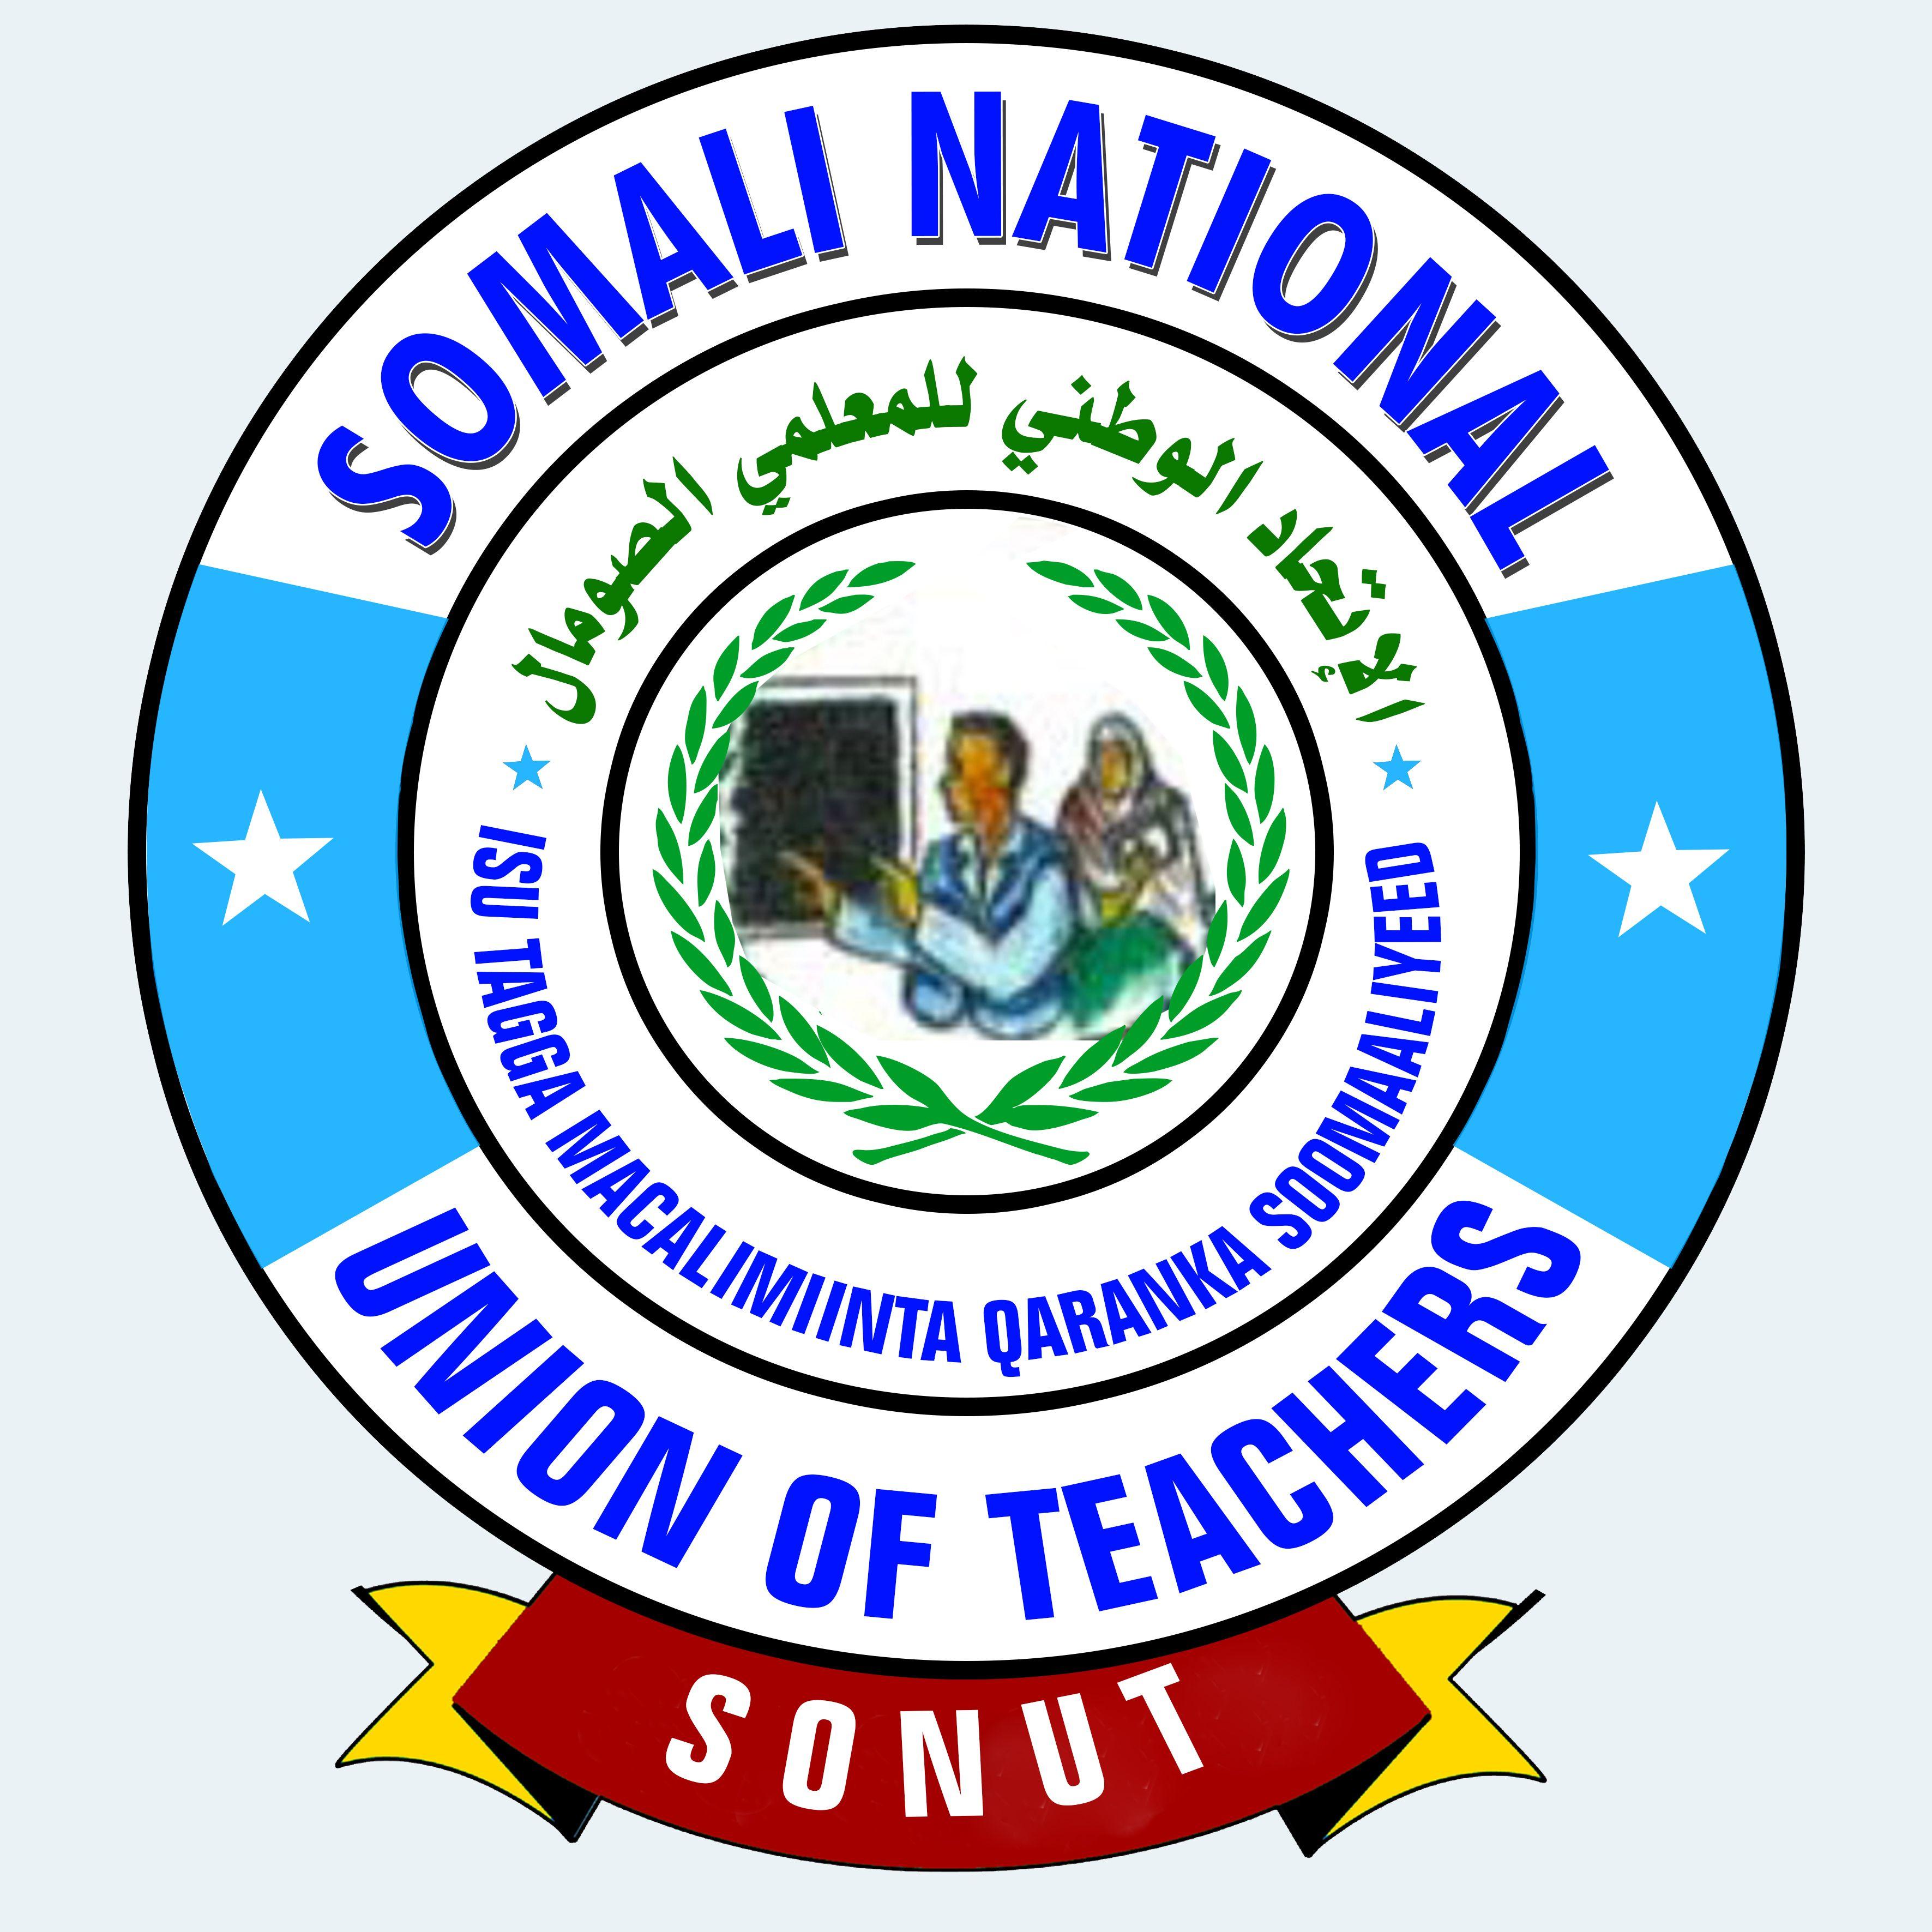 Somali Logo - Somali National Union of Teachers - Logo - Girls Not Brides